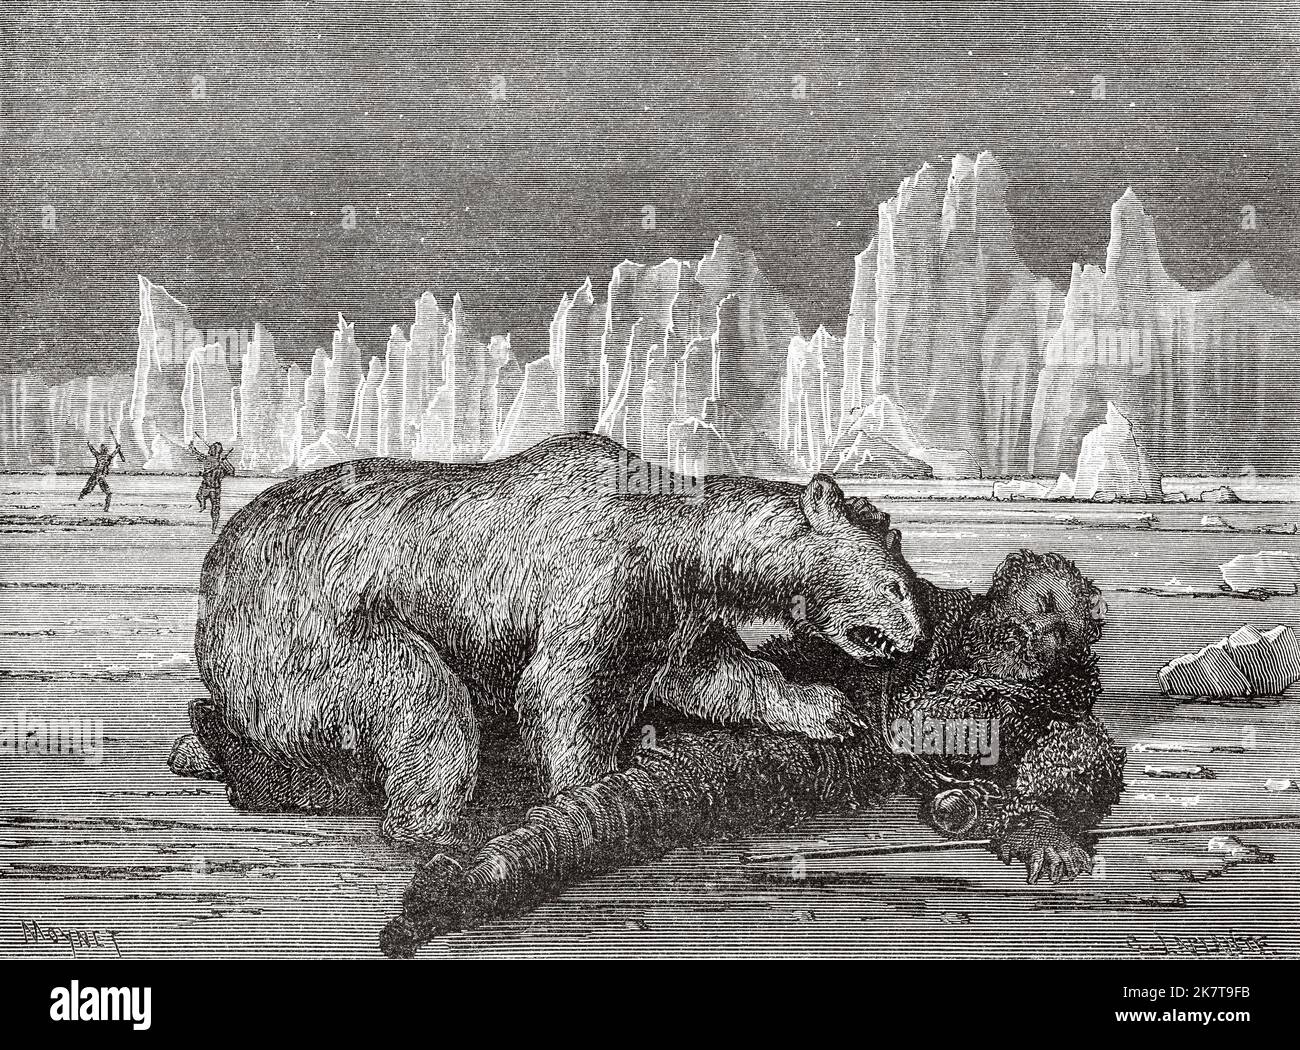 Dr. Borgen wird von einem Eisbären angegriffen. Zweite deutsche Expedition zum Nordpol mit den Schiffen Germania und Hansa, 1869 Stockfoto